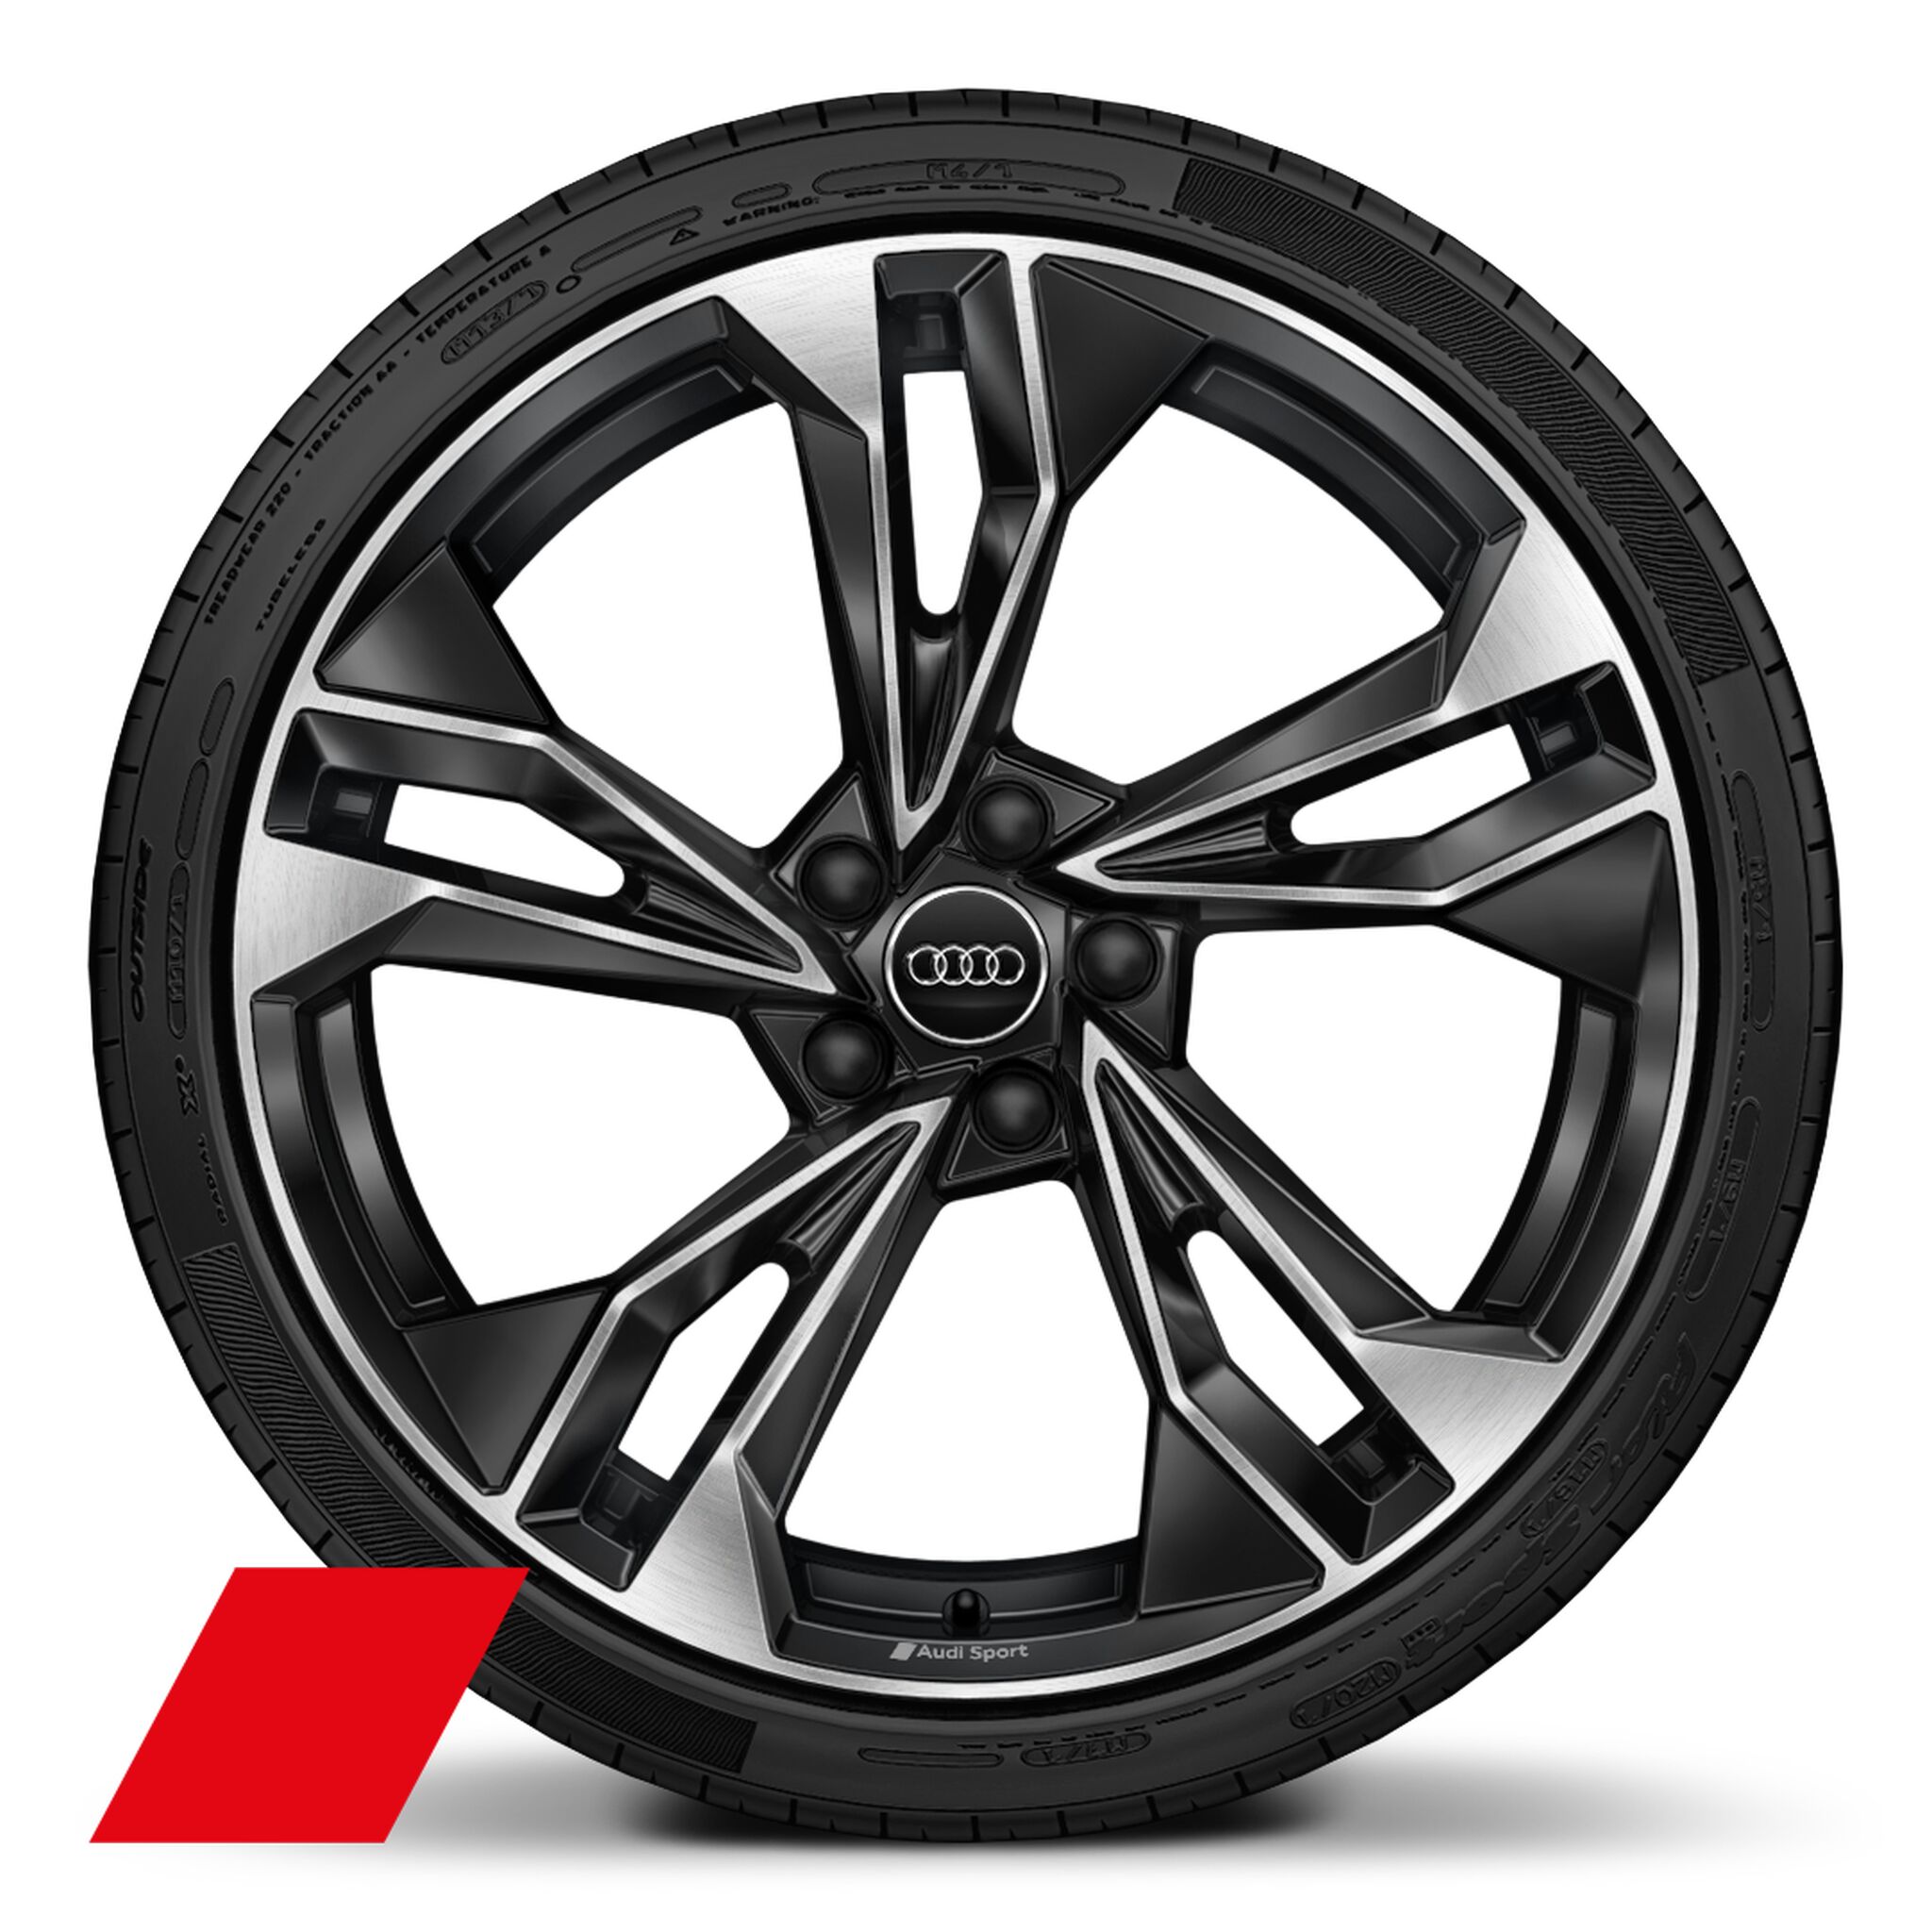 Räder Audi Sport, 5-Doppelspeichen-Polygon, schwarz, glanzgedreht, 9,0Jx20, Reifen 265/30 R20